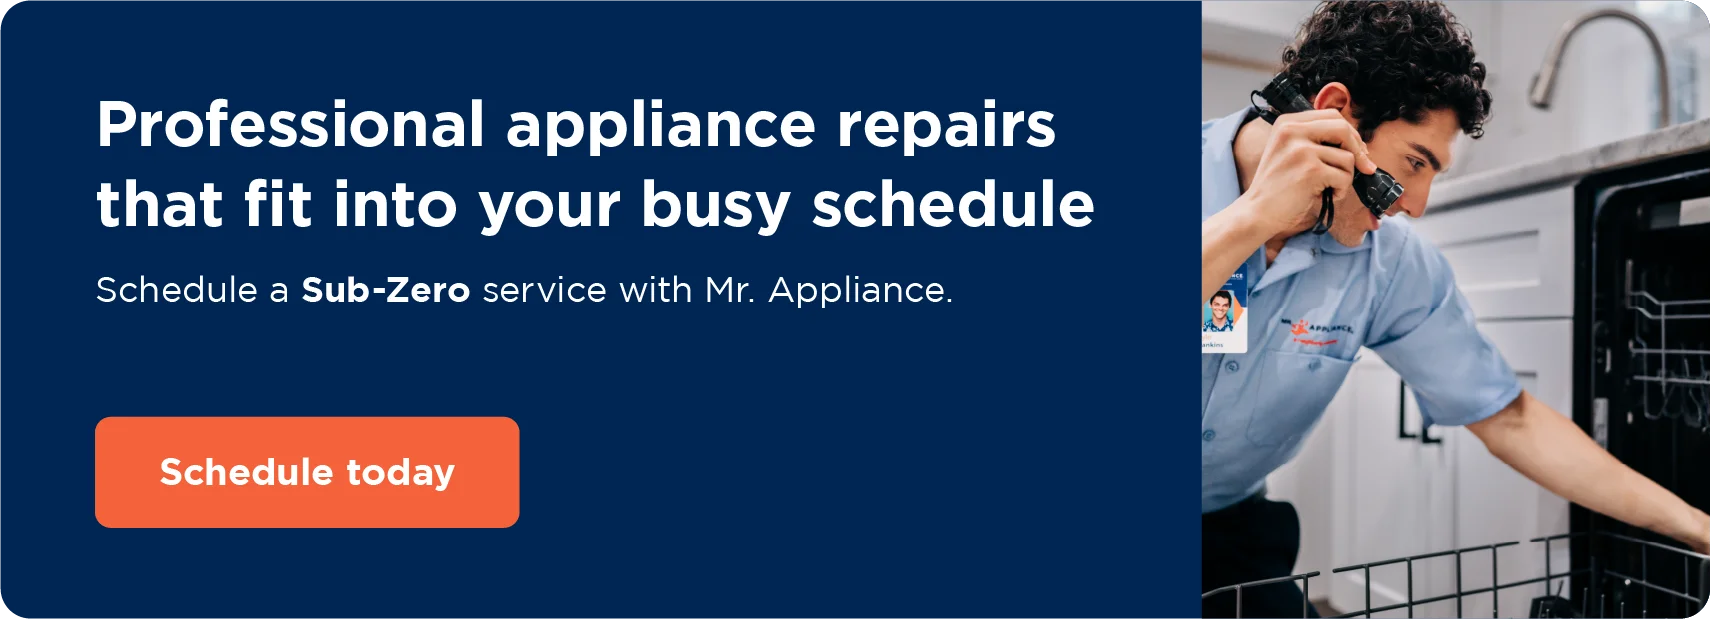 Schedule Sub-Zero refrigerator repair online with Mr. Appliance.